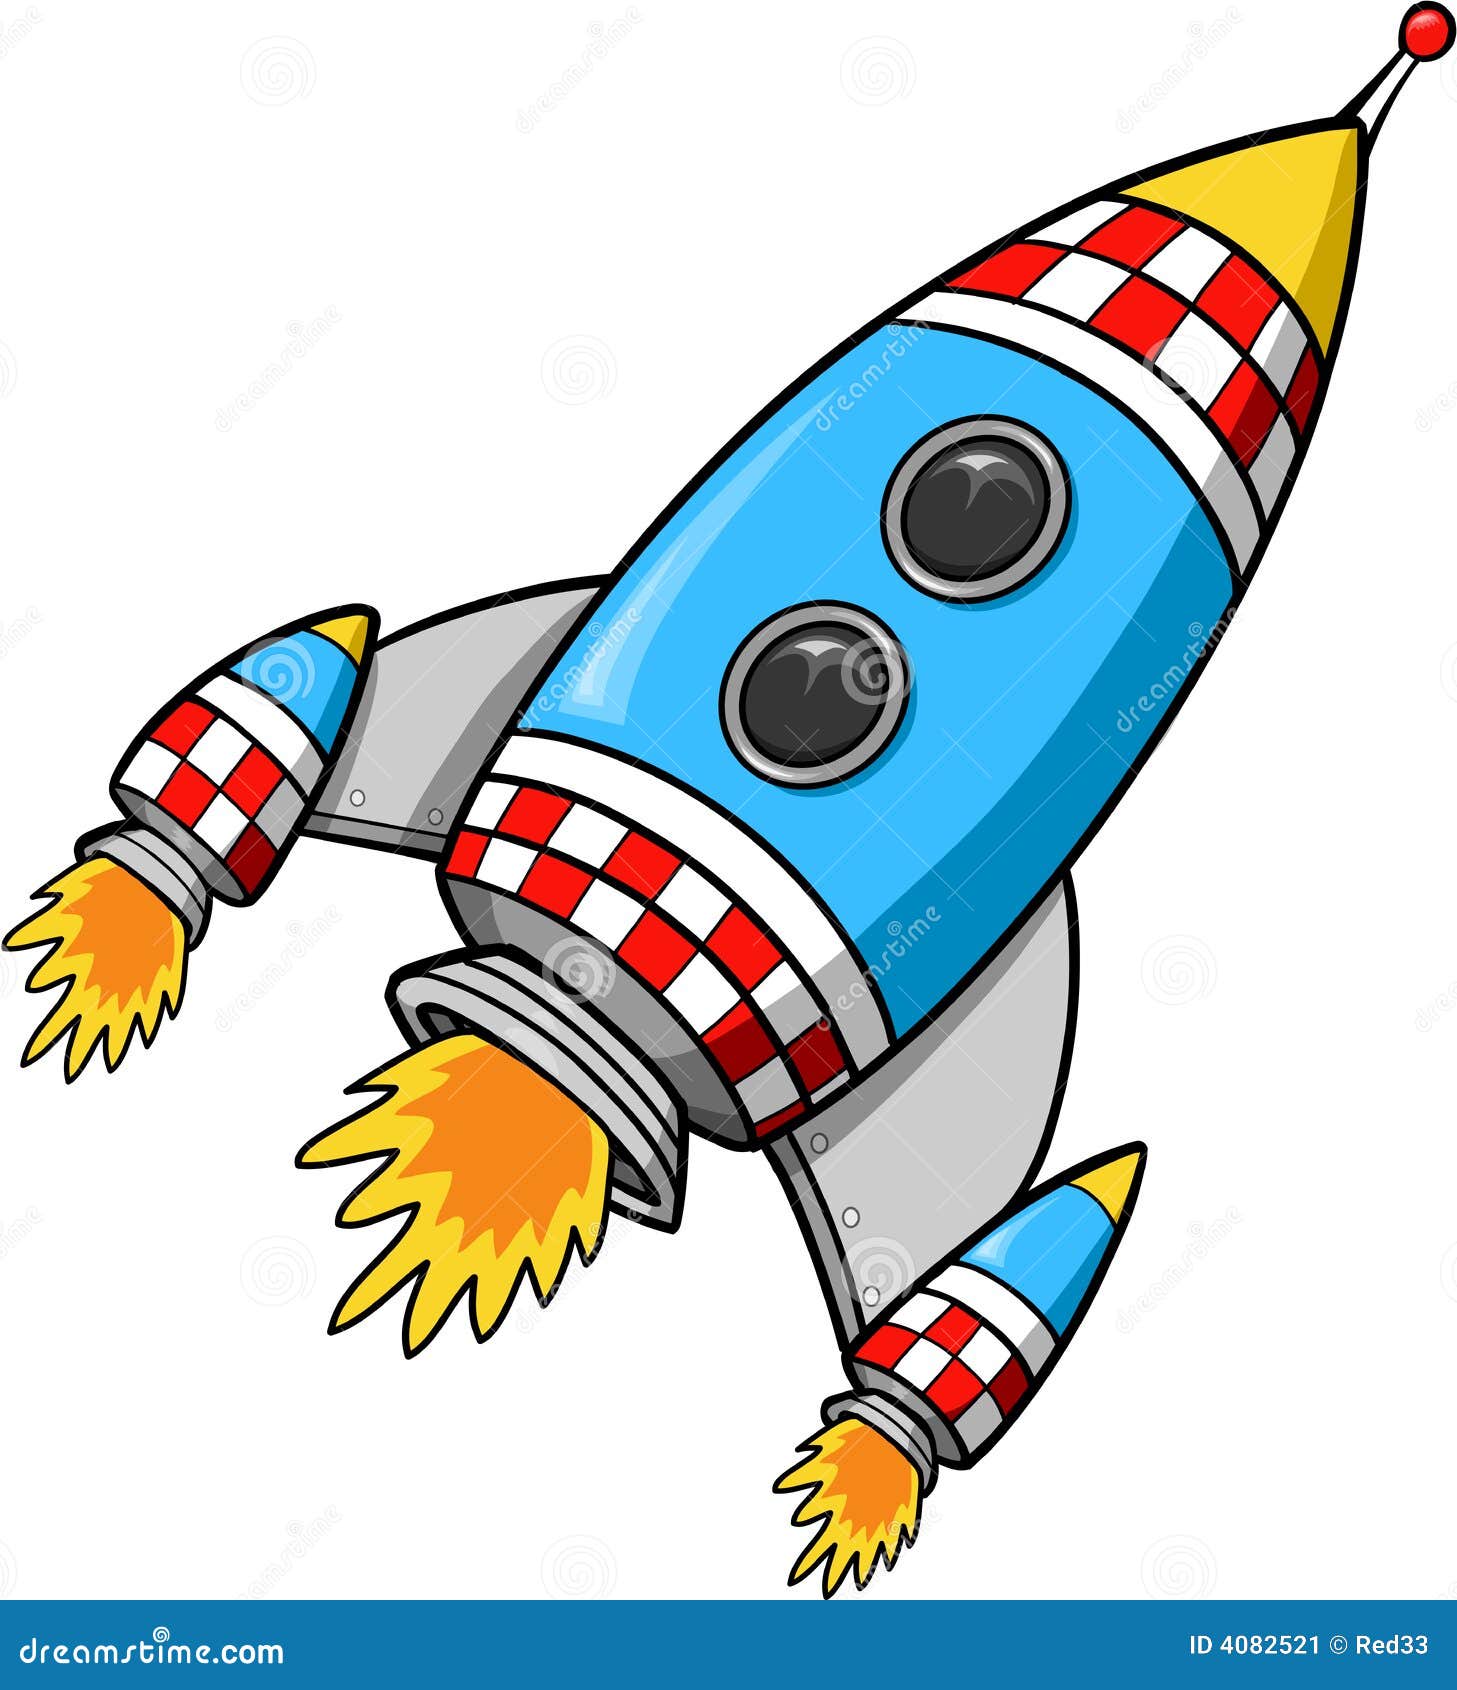 Ракета картинки для детей дошкольного возраста. Мультяшные ракеты. Космический корабль для детей. Ракета для детей дошкольного возраста. Изображение космической ракеты для детей.